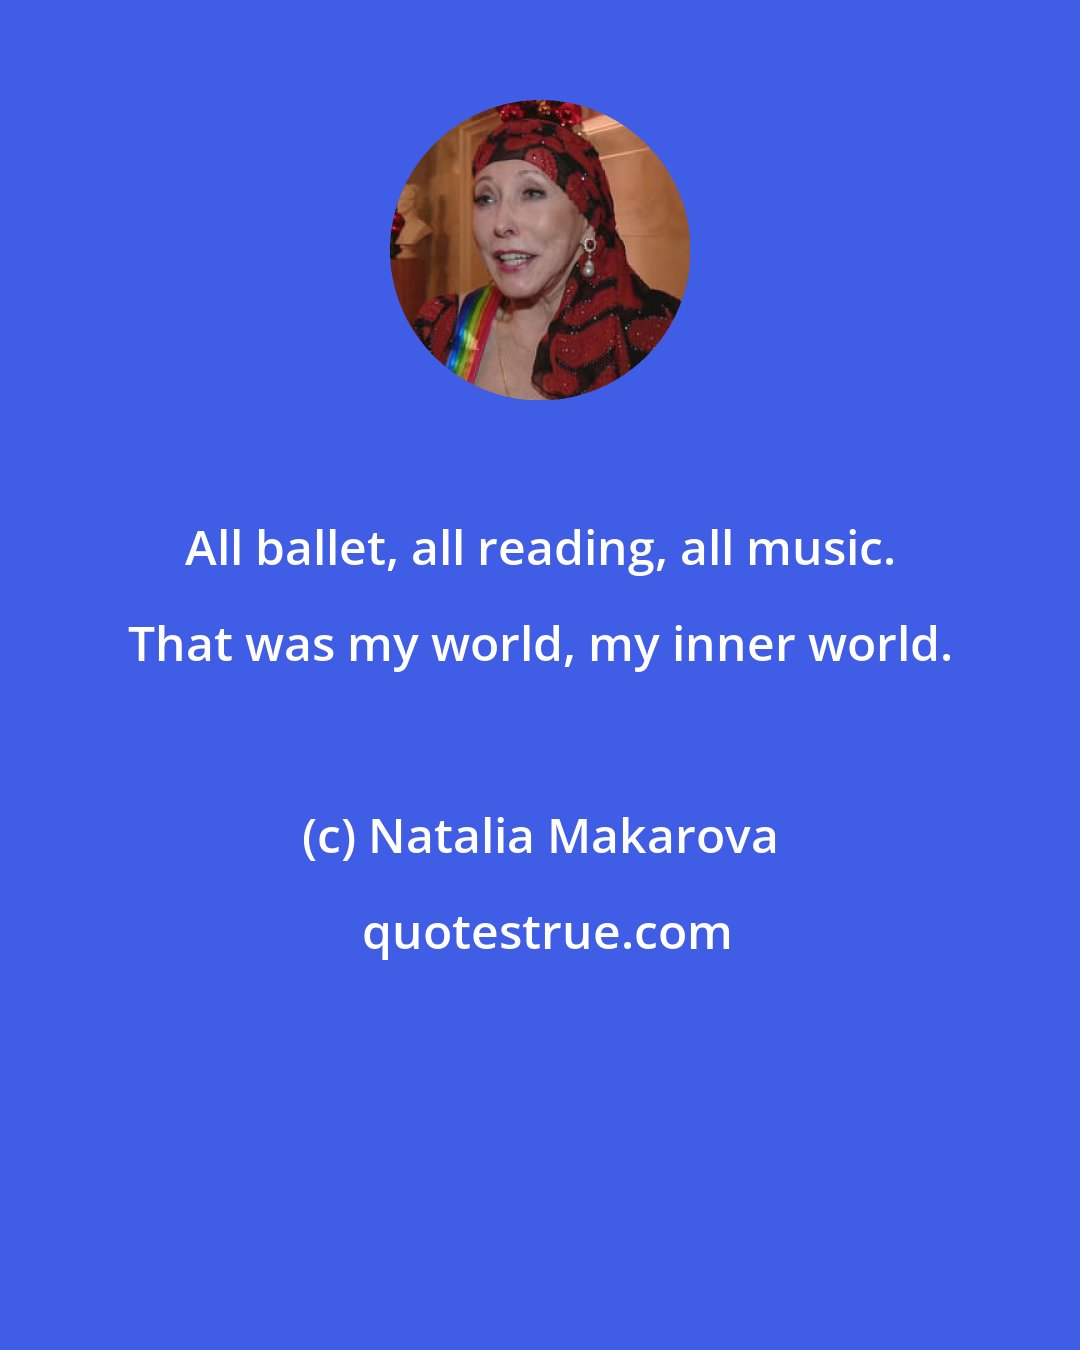 Natalia Makarova: All ballet, all reading, all music. That was my world, my inner world.